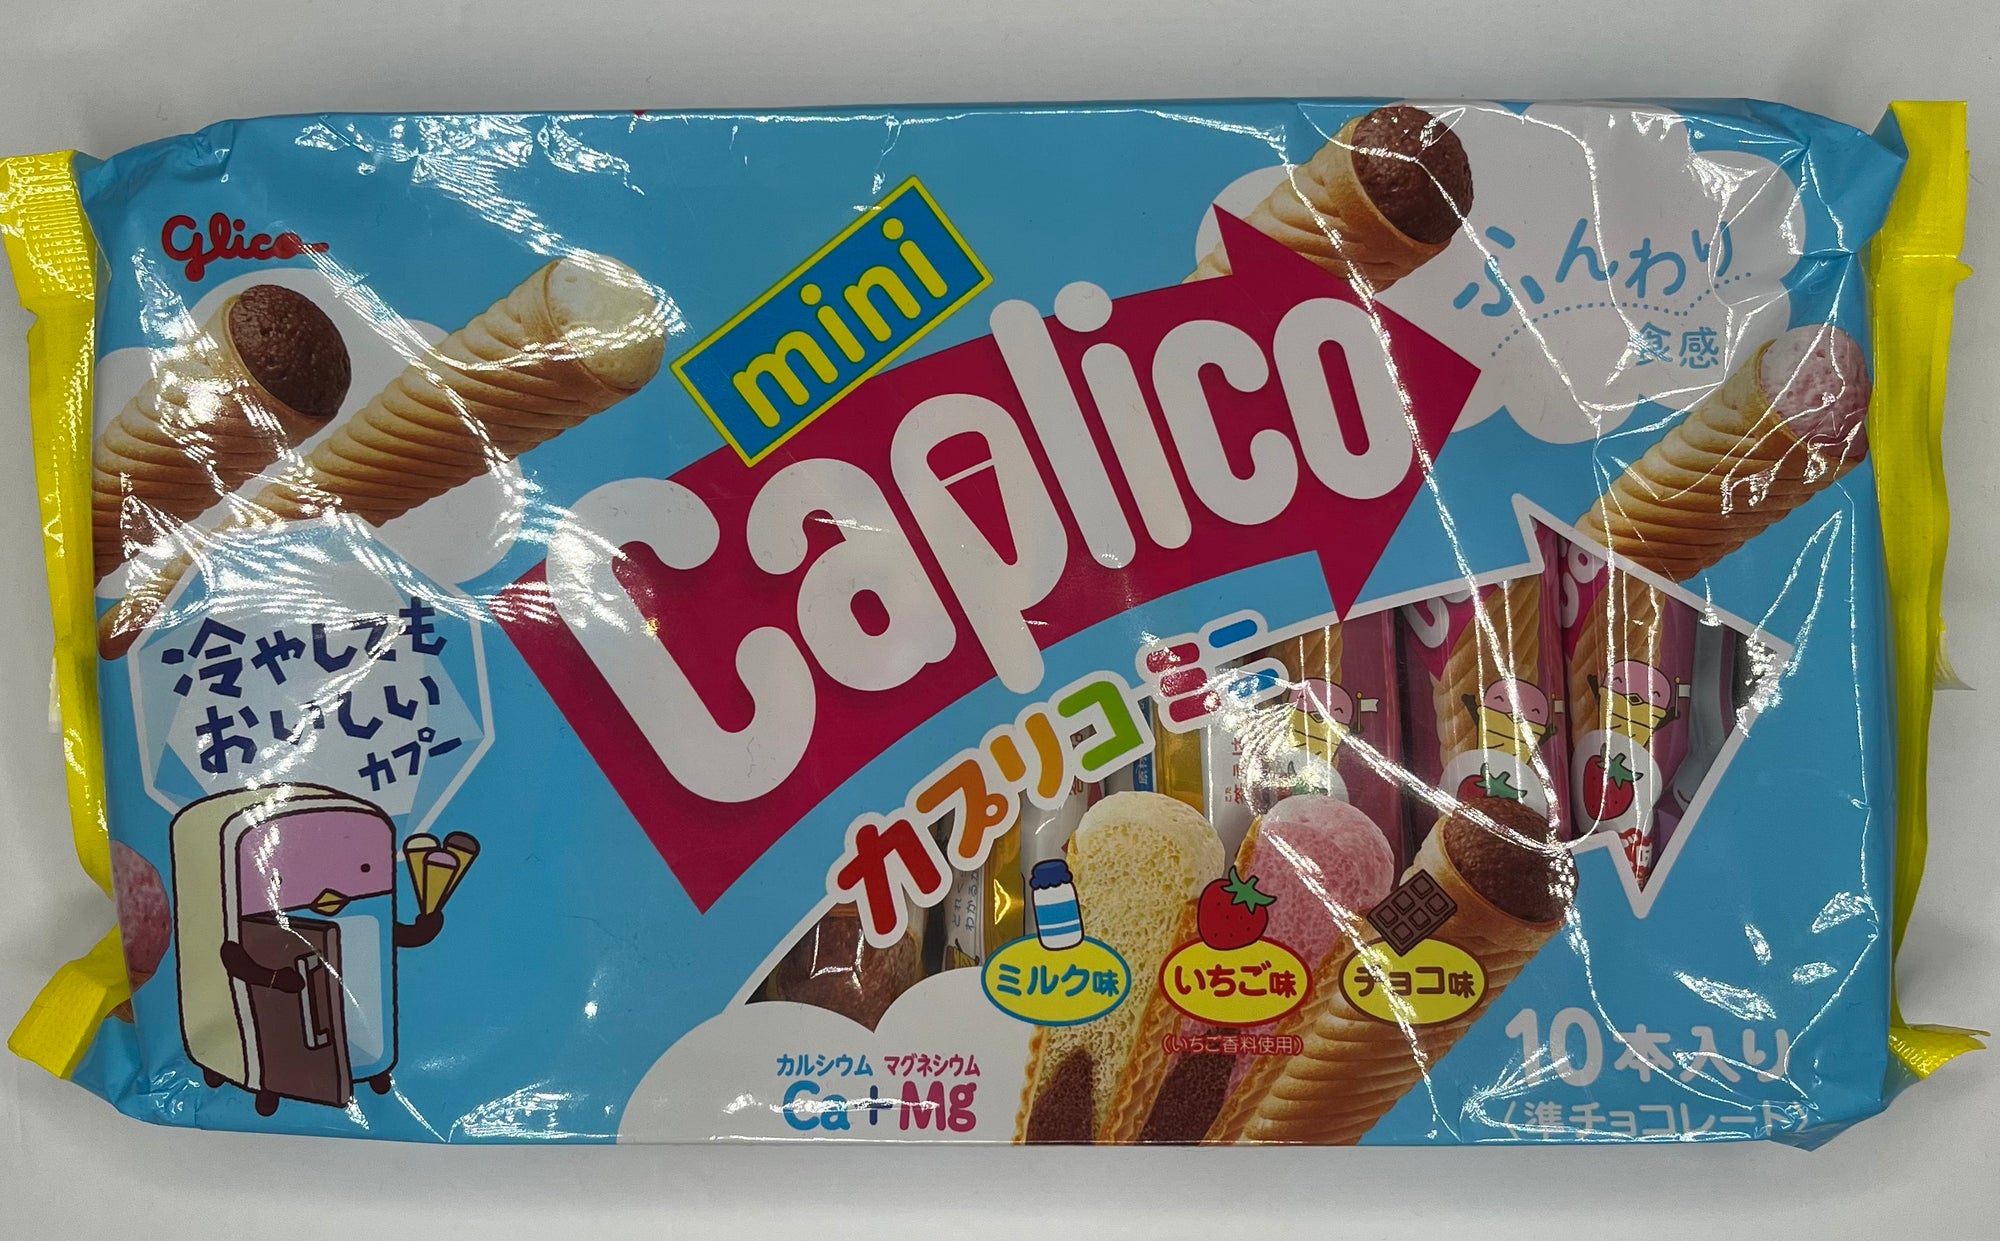 Caplico Ice Cream Wafer Cones (Japan)